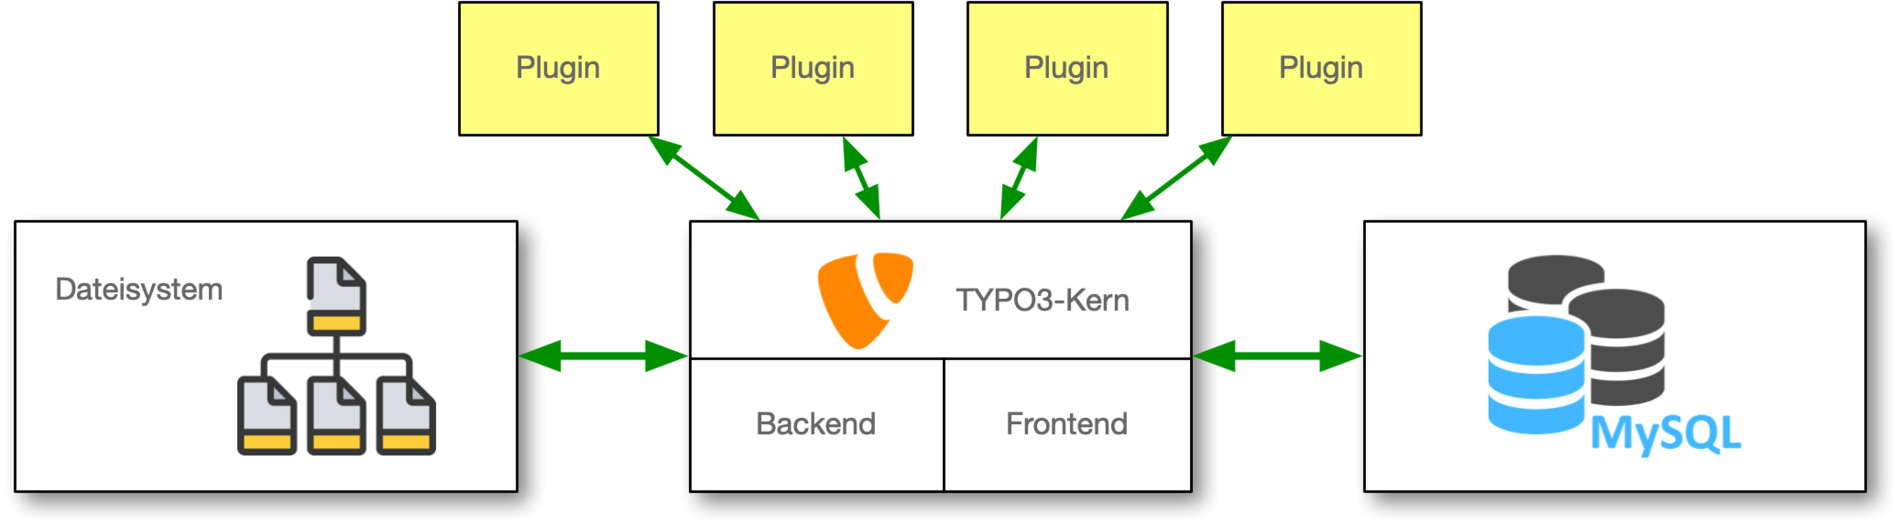 TYPO3 und das Dateisystem